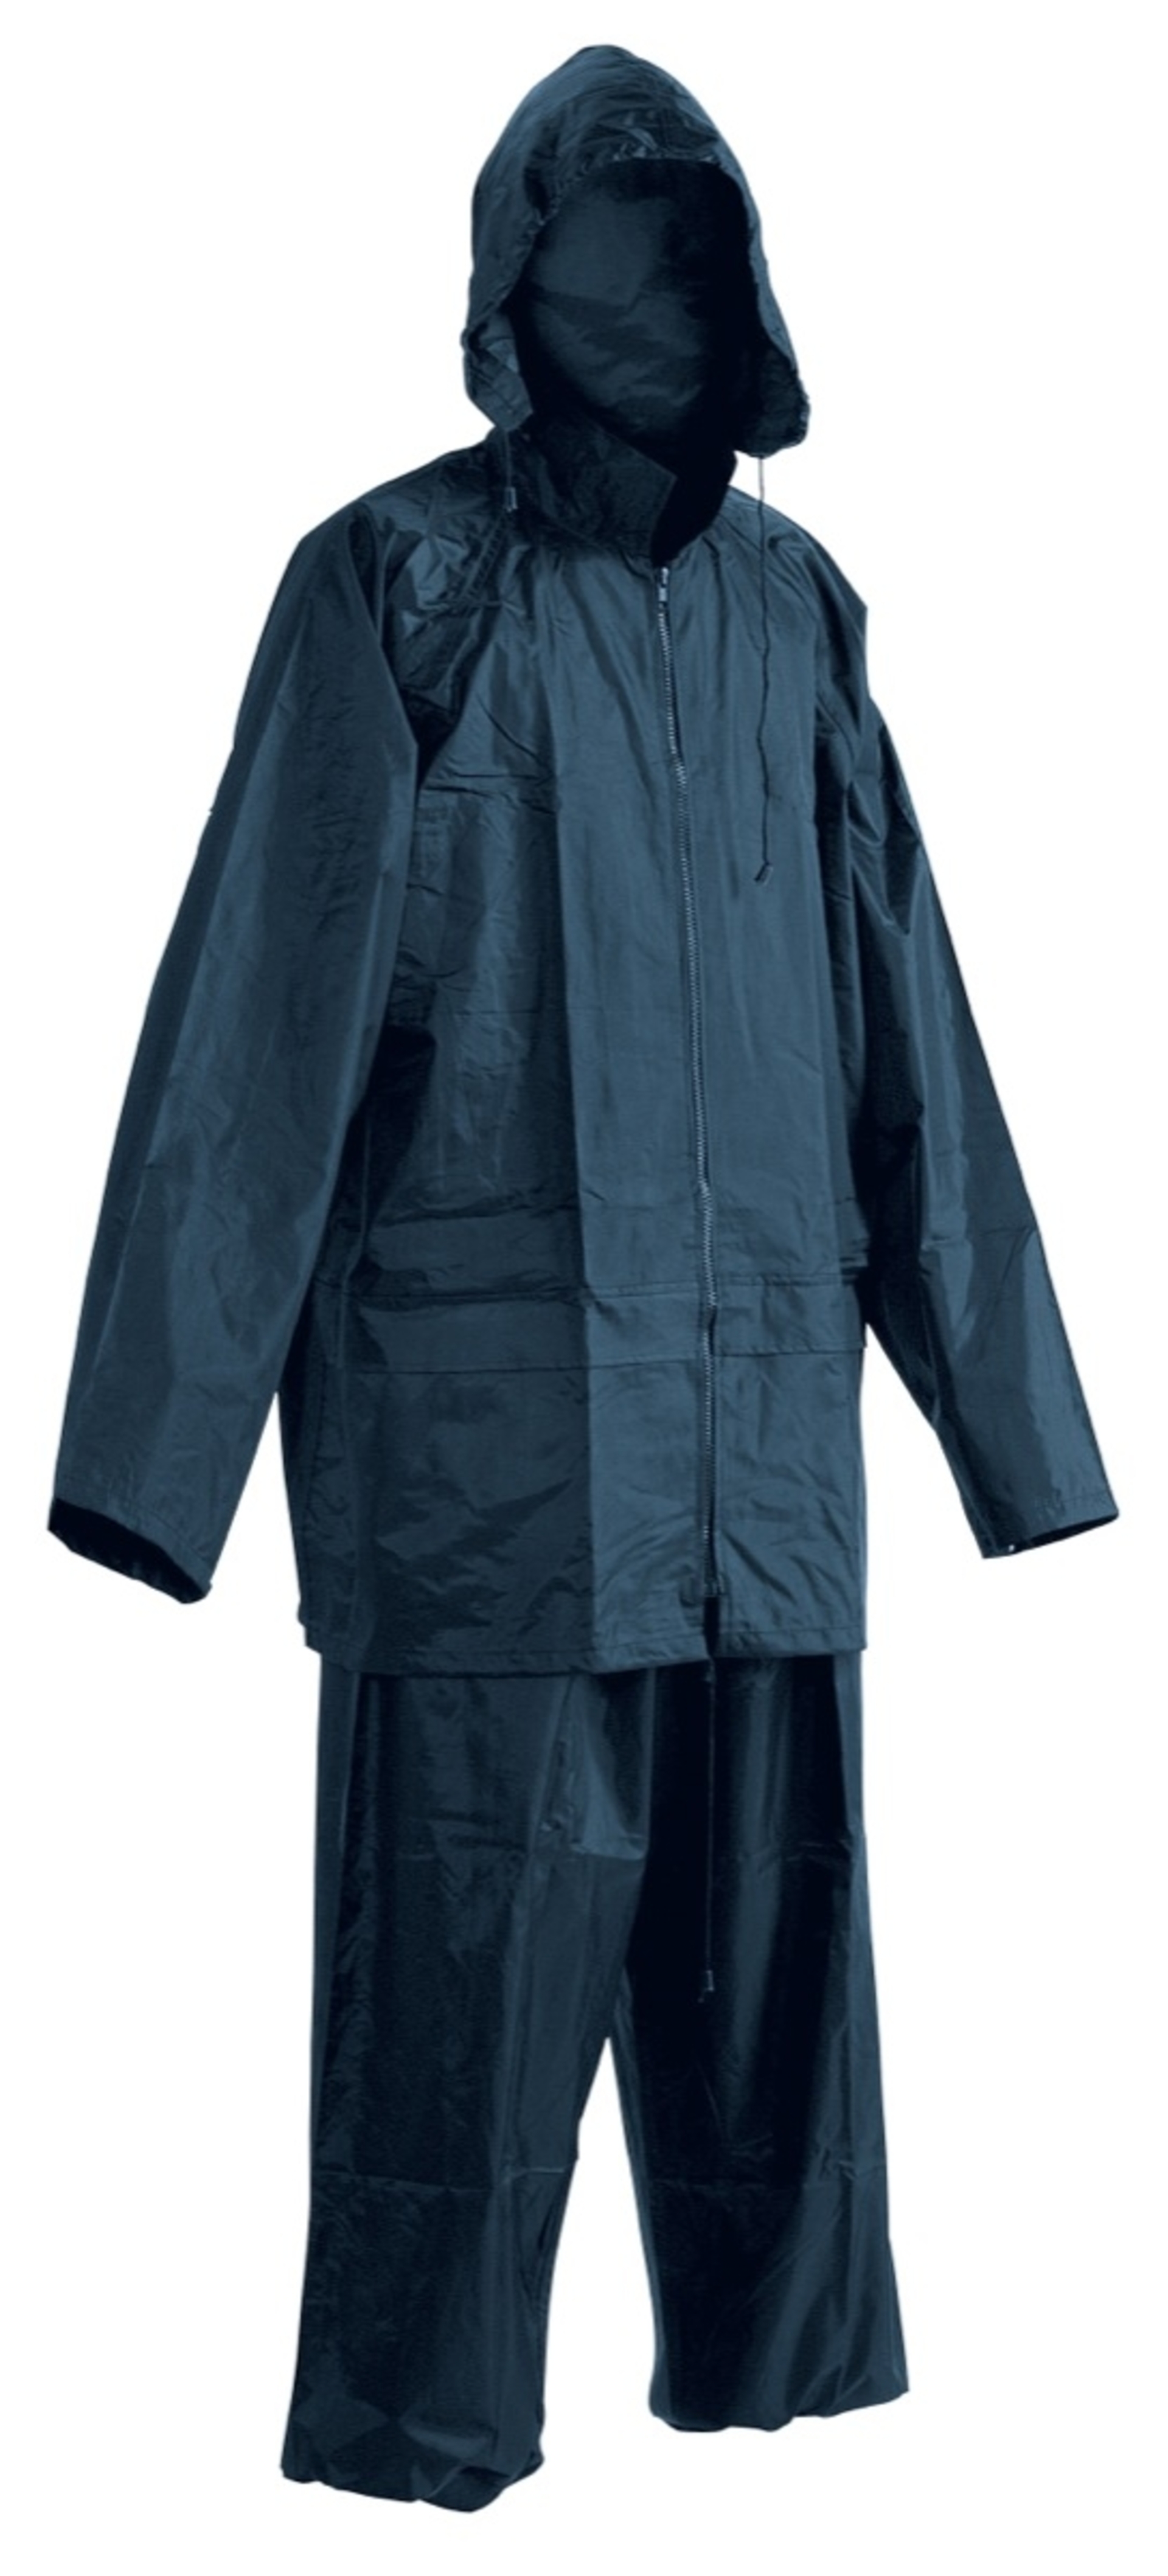 Cerva CARINA Oblek nepromokavý modrá XL + Bezplatné vrácení zboží